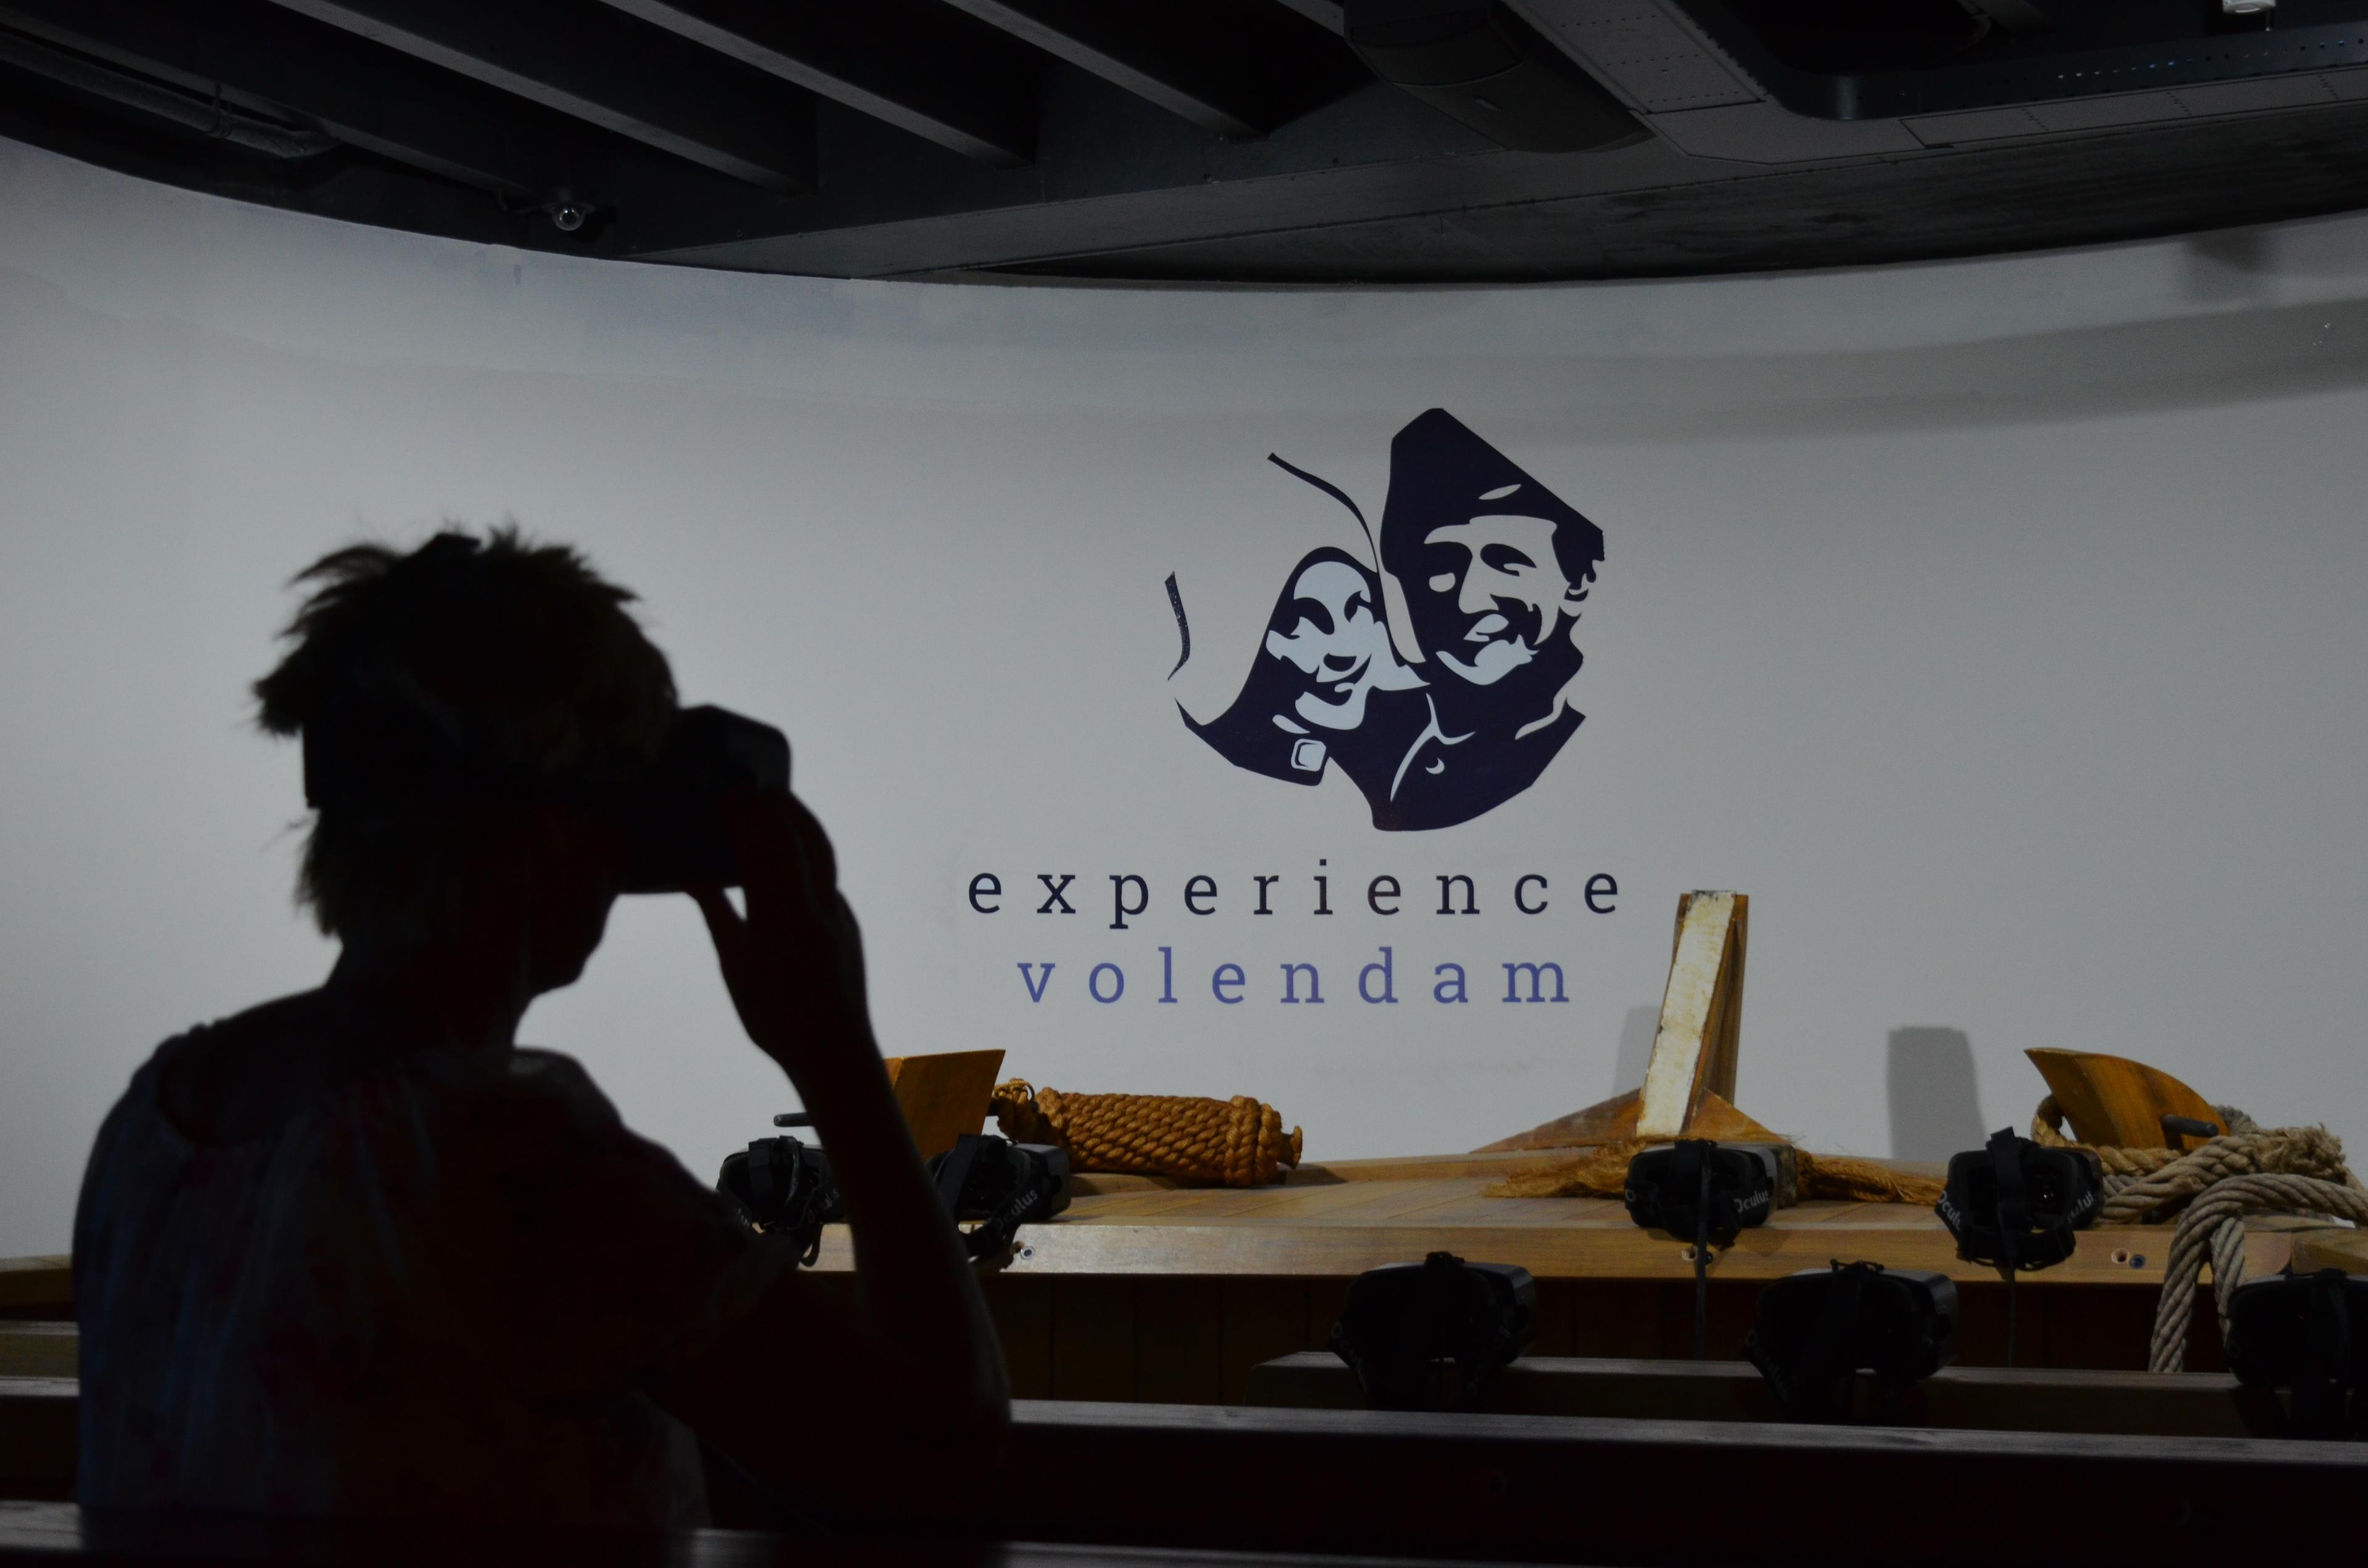 Fotoshoot in klederdracht + VR-experience door Volendam